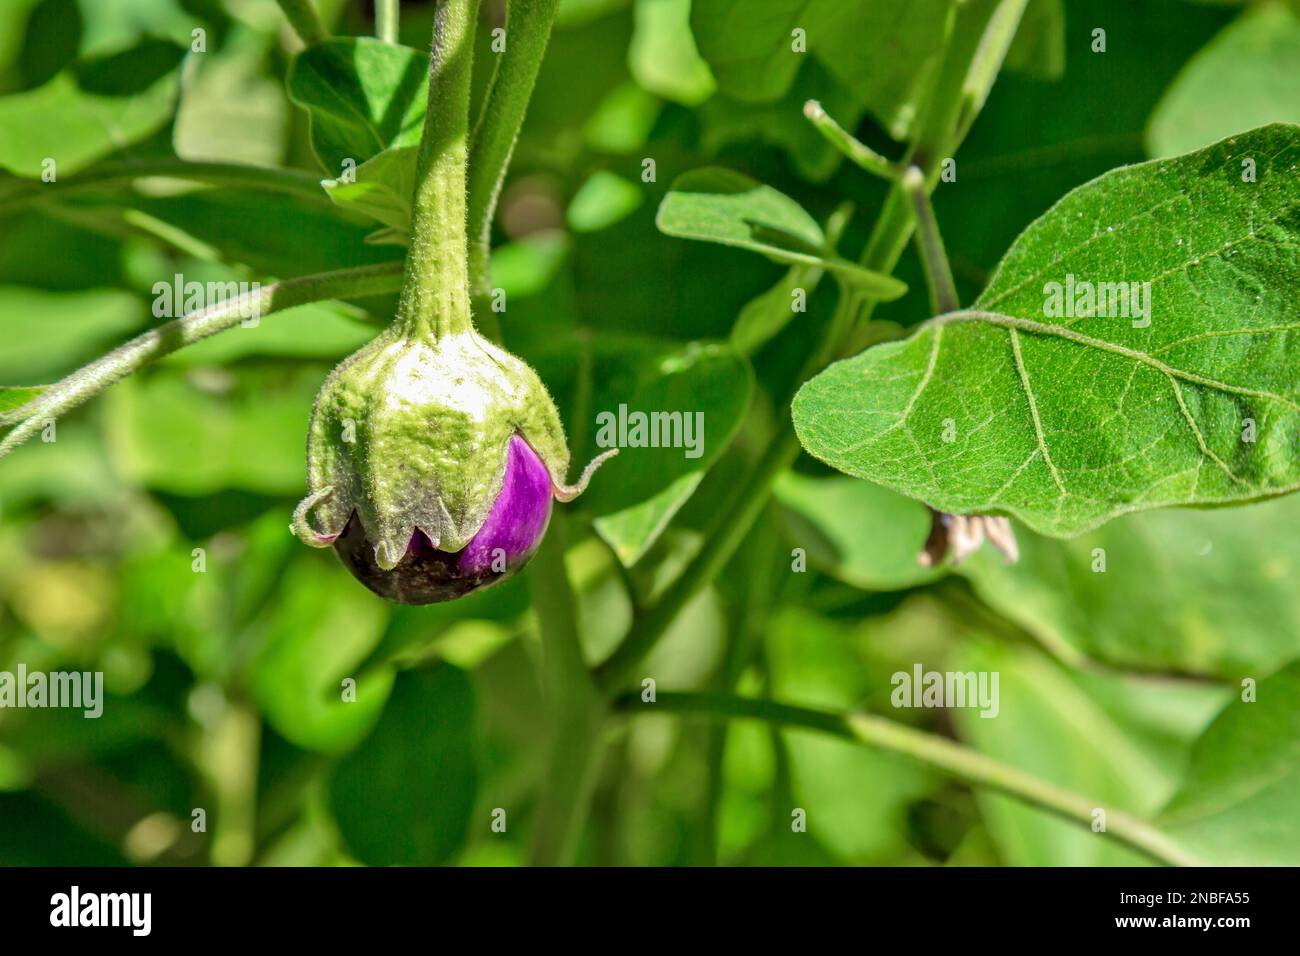 Die violetten und kugelförmigen indischen Auberginen, auch als Baby-Auberginen bekannt, sind für ihr kleines, rundes Aussehen und ihre zarte Textur bekannt. Stockfoto